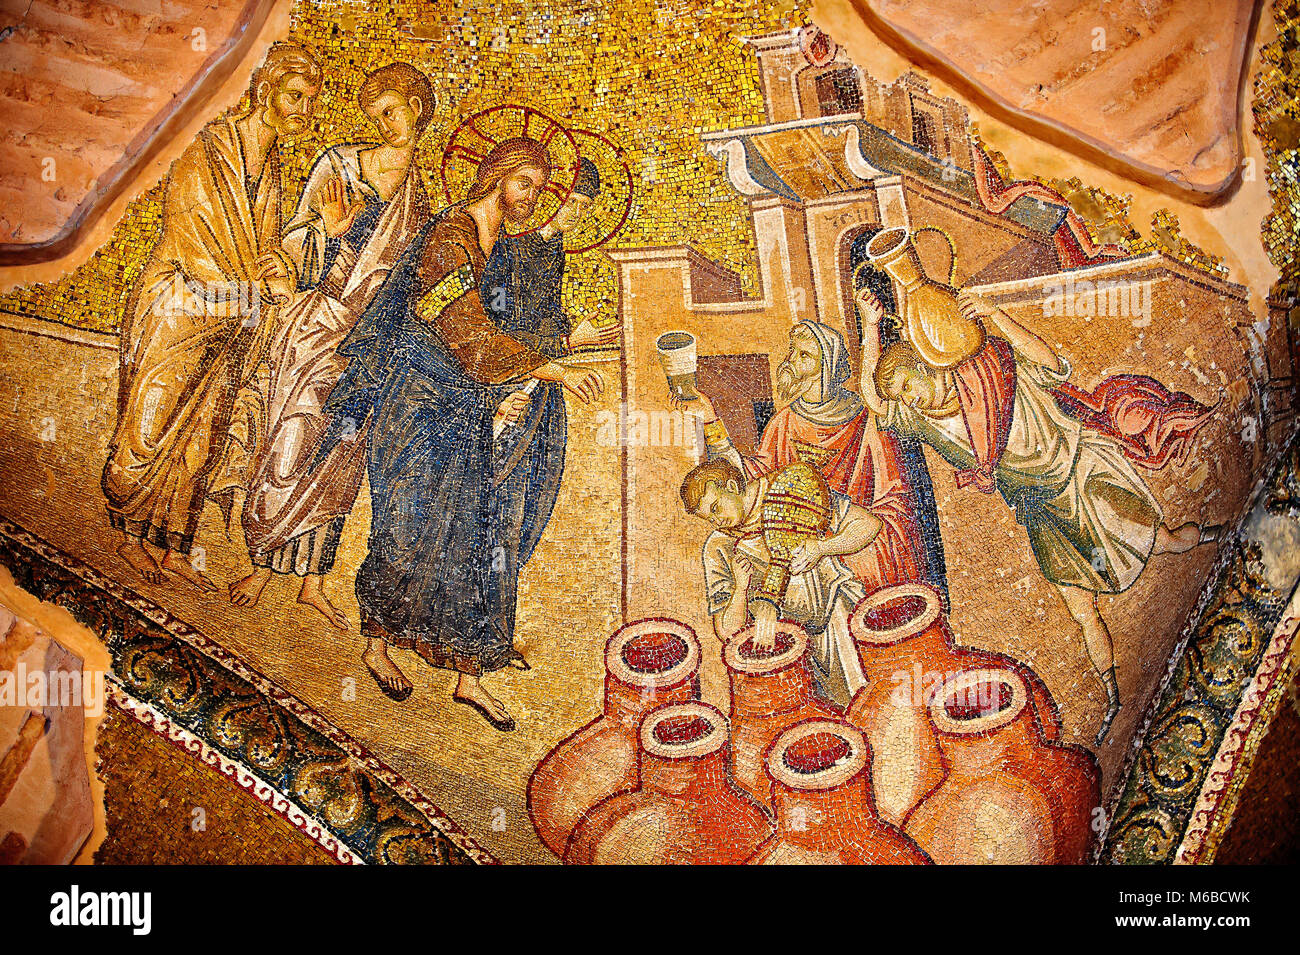 Das 11. Jahrhundert byzantinischen Kirche des Heiligen Erlösers in Chora und ein Mosaik von Das Wunder von Christus er Wasser in Wein. Zwischen ausgestattet Stockfoto